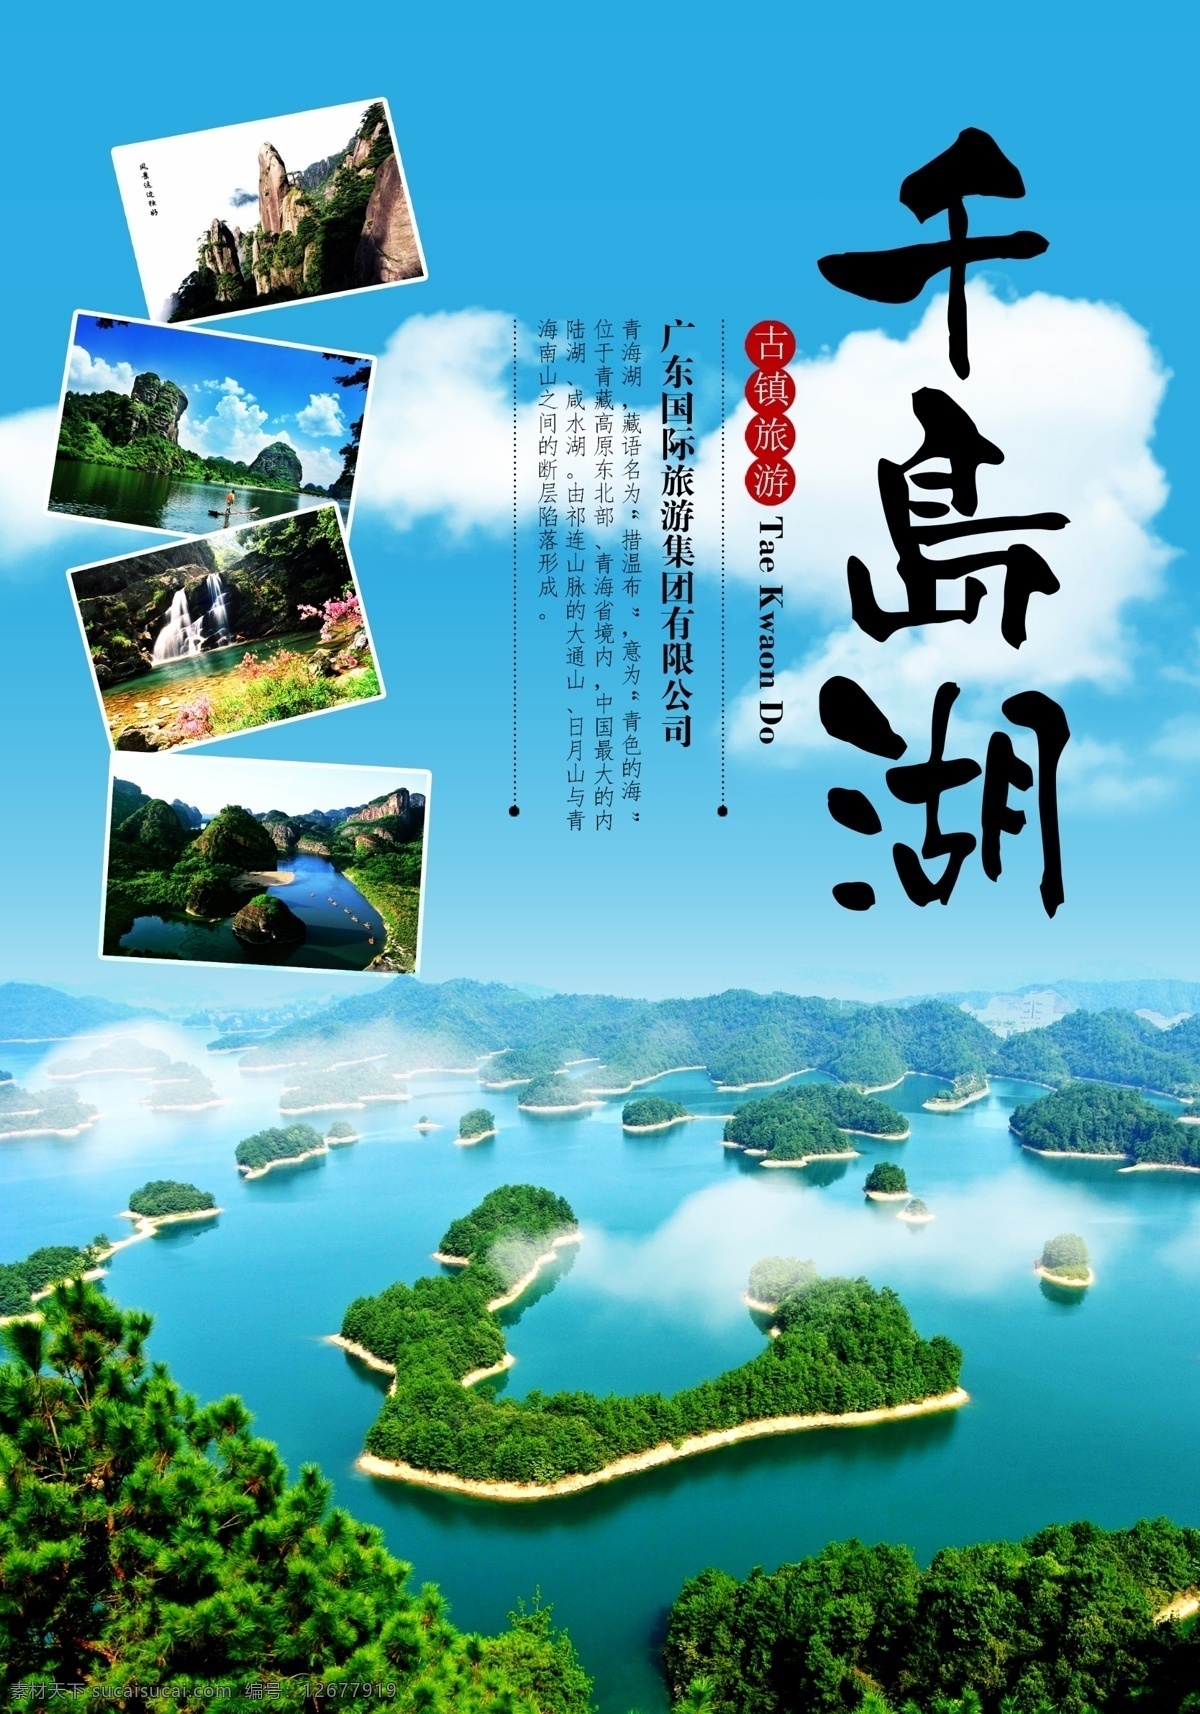 蓝色 杭州 千岛湖 旅游景点 旅行社 宣传海报 旅游 模板 海报 展板